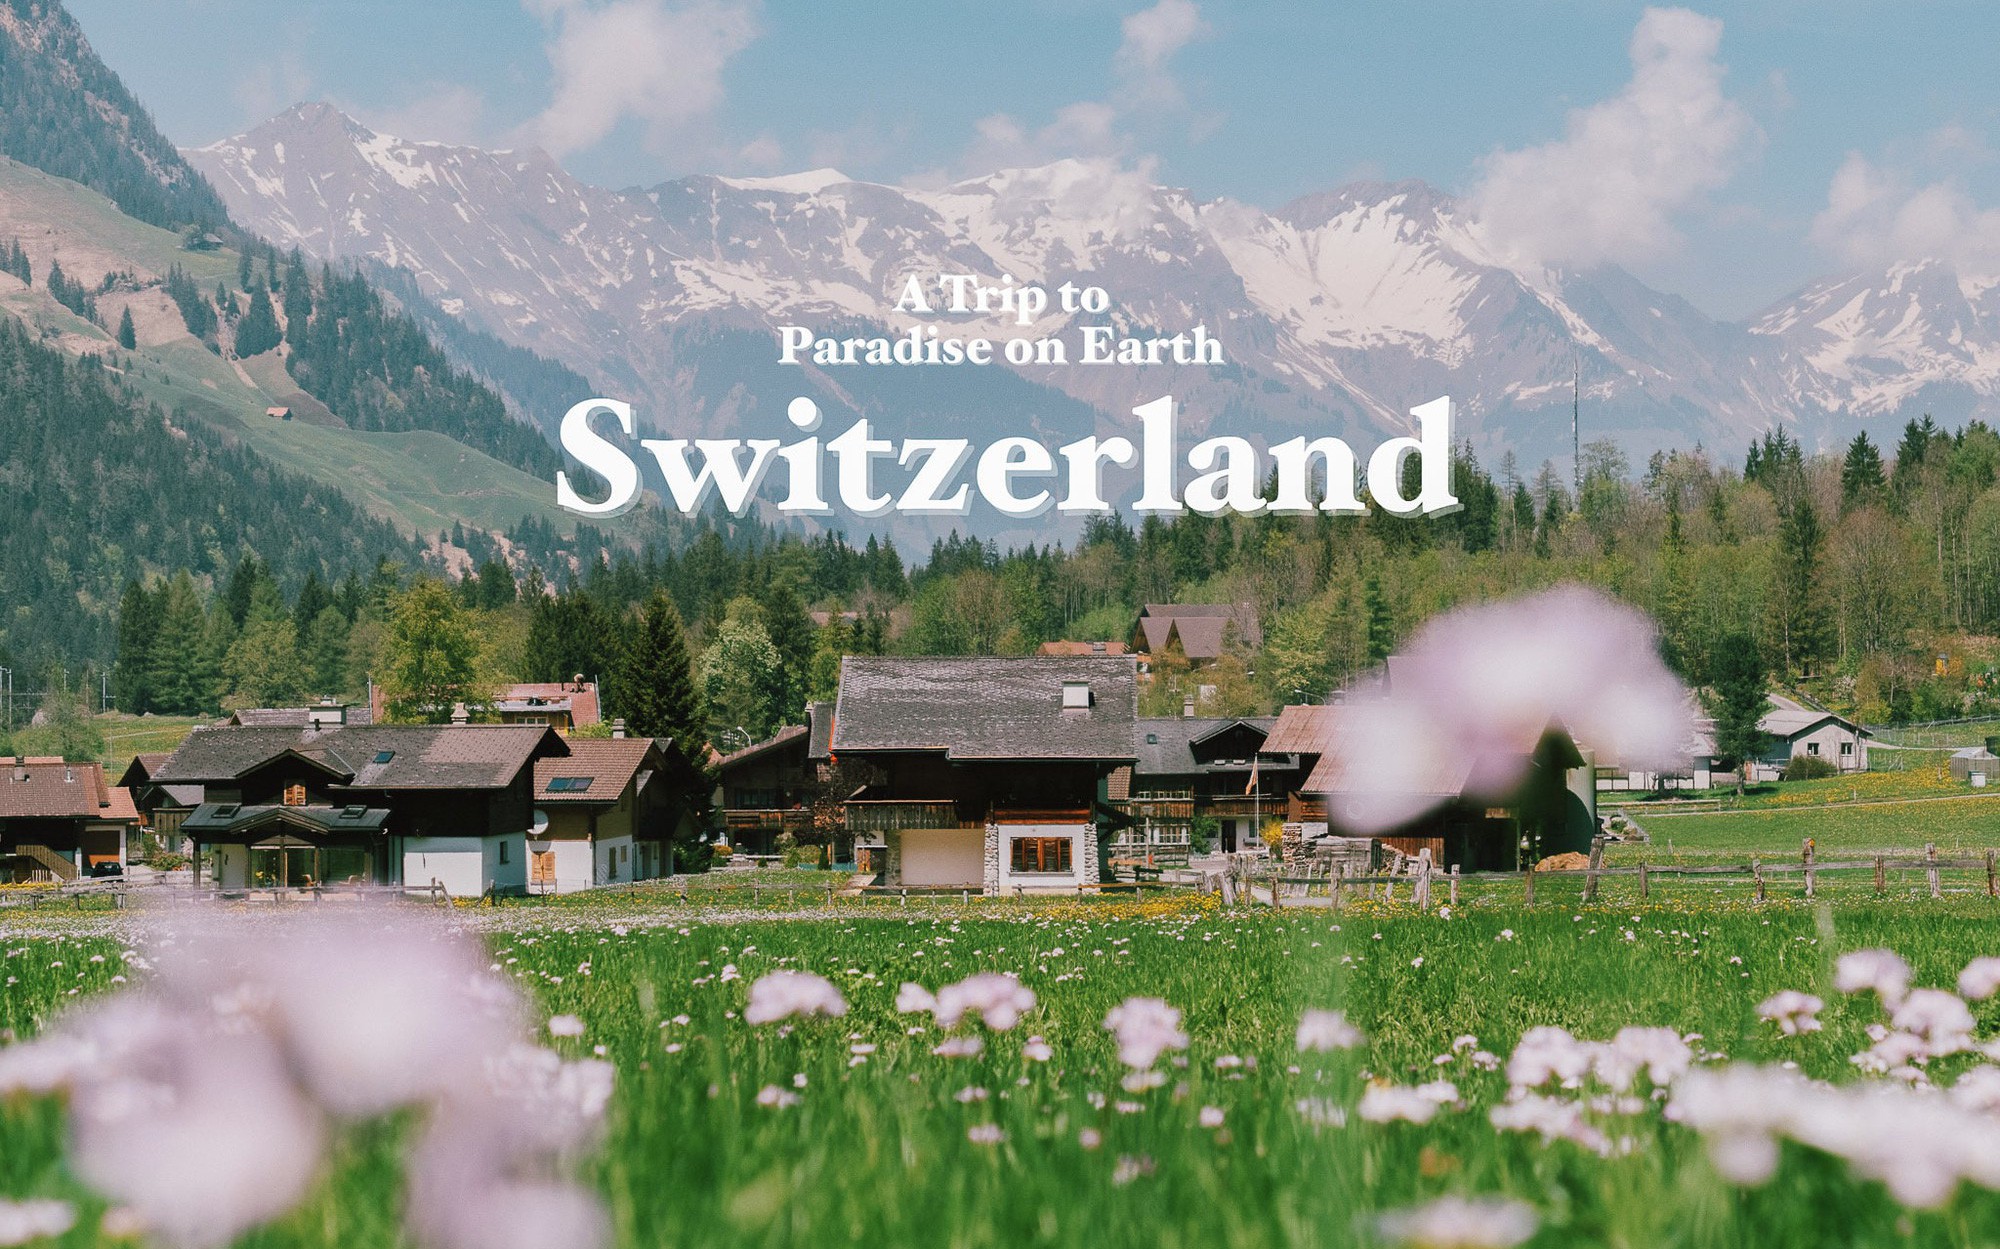 Giữa lúc khắp nơi ô nhiễm như thế này, mời bạn xem ngay bộ ảnh du lịch xanh mướt ở Thụy Sĩ để xoa dịu tâm hồn nhé!